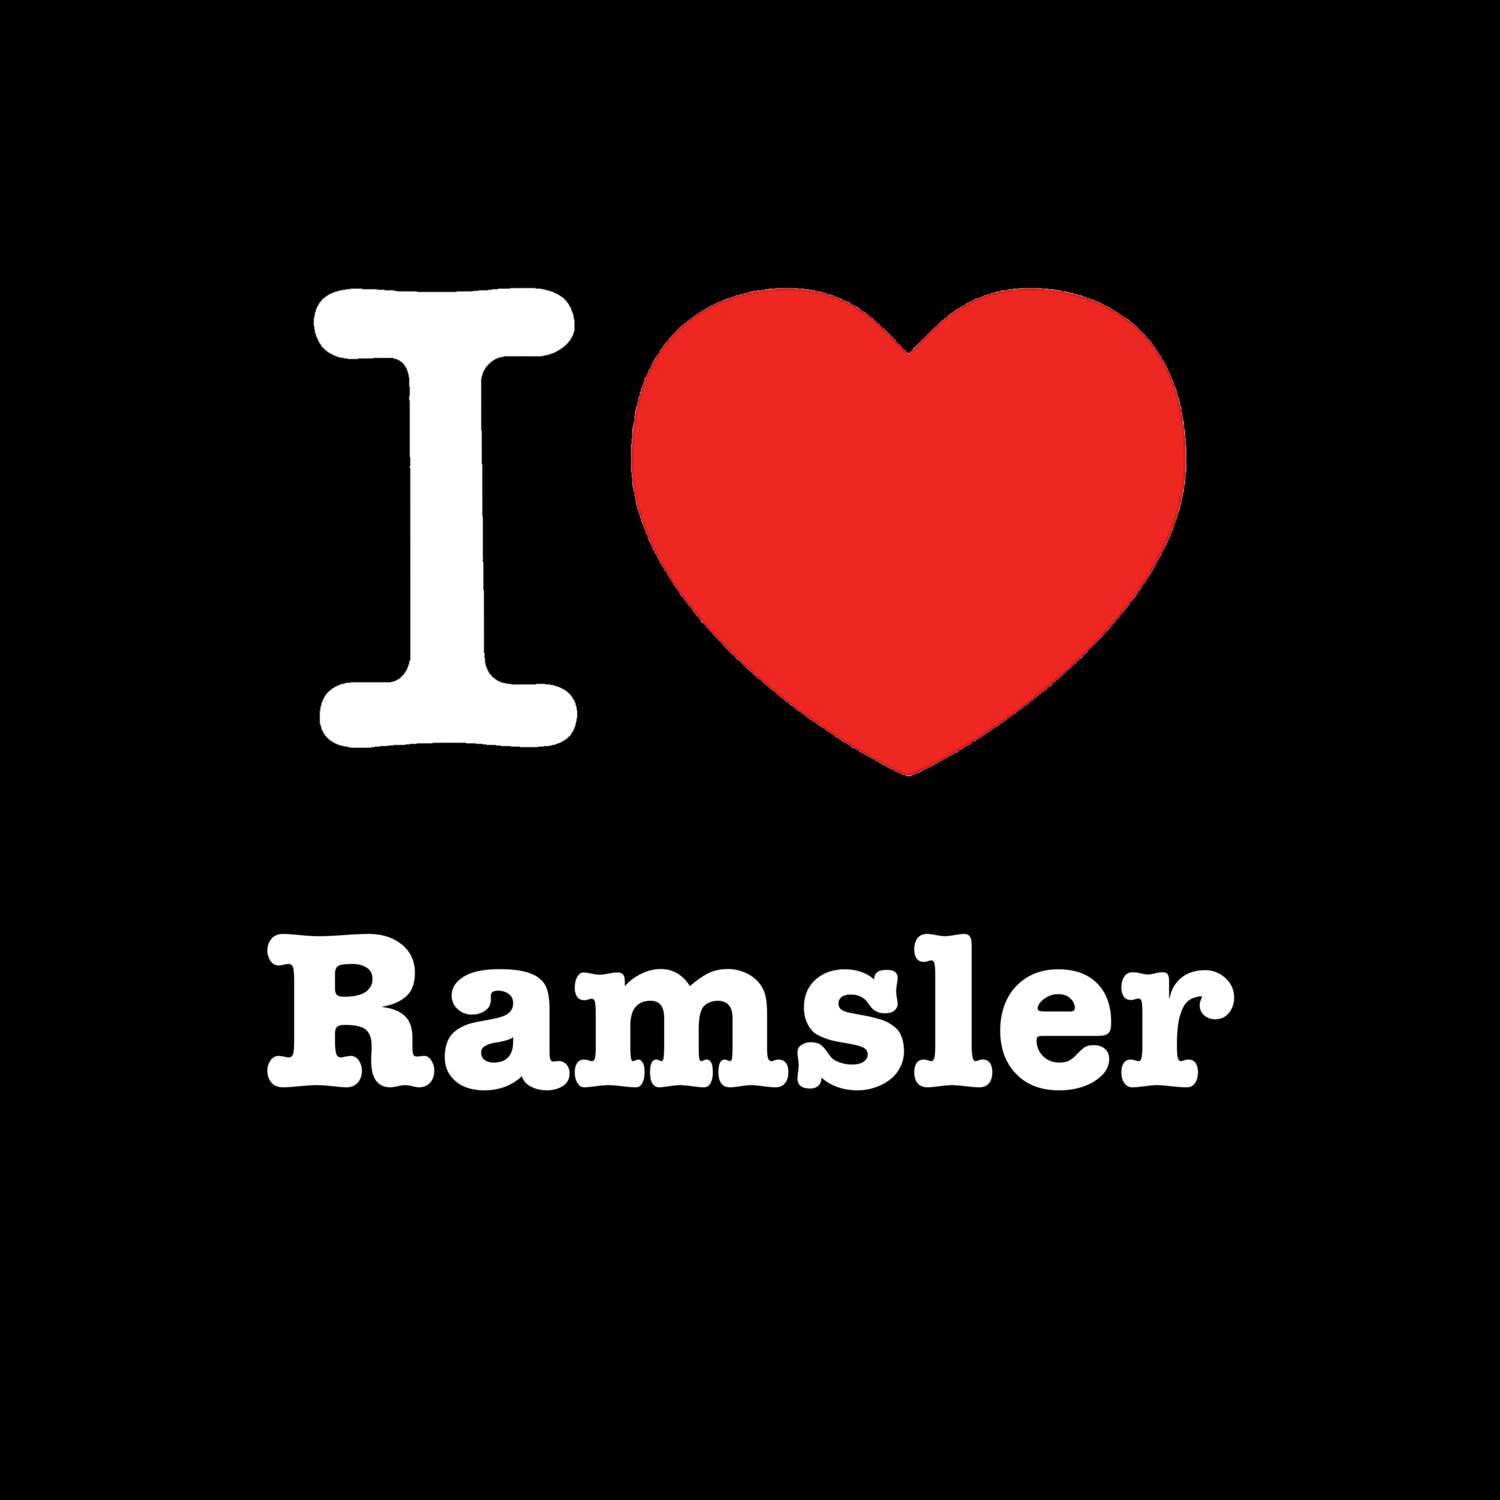 Ramsler T-Shirt »I love«